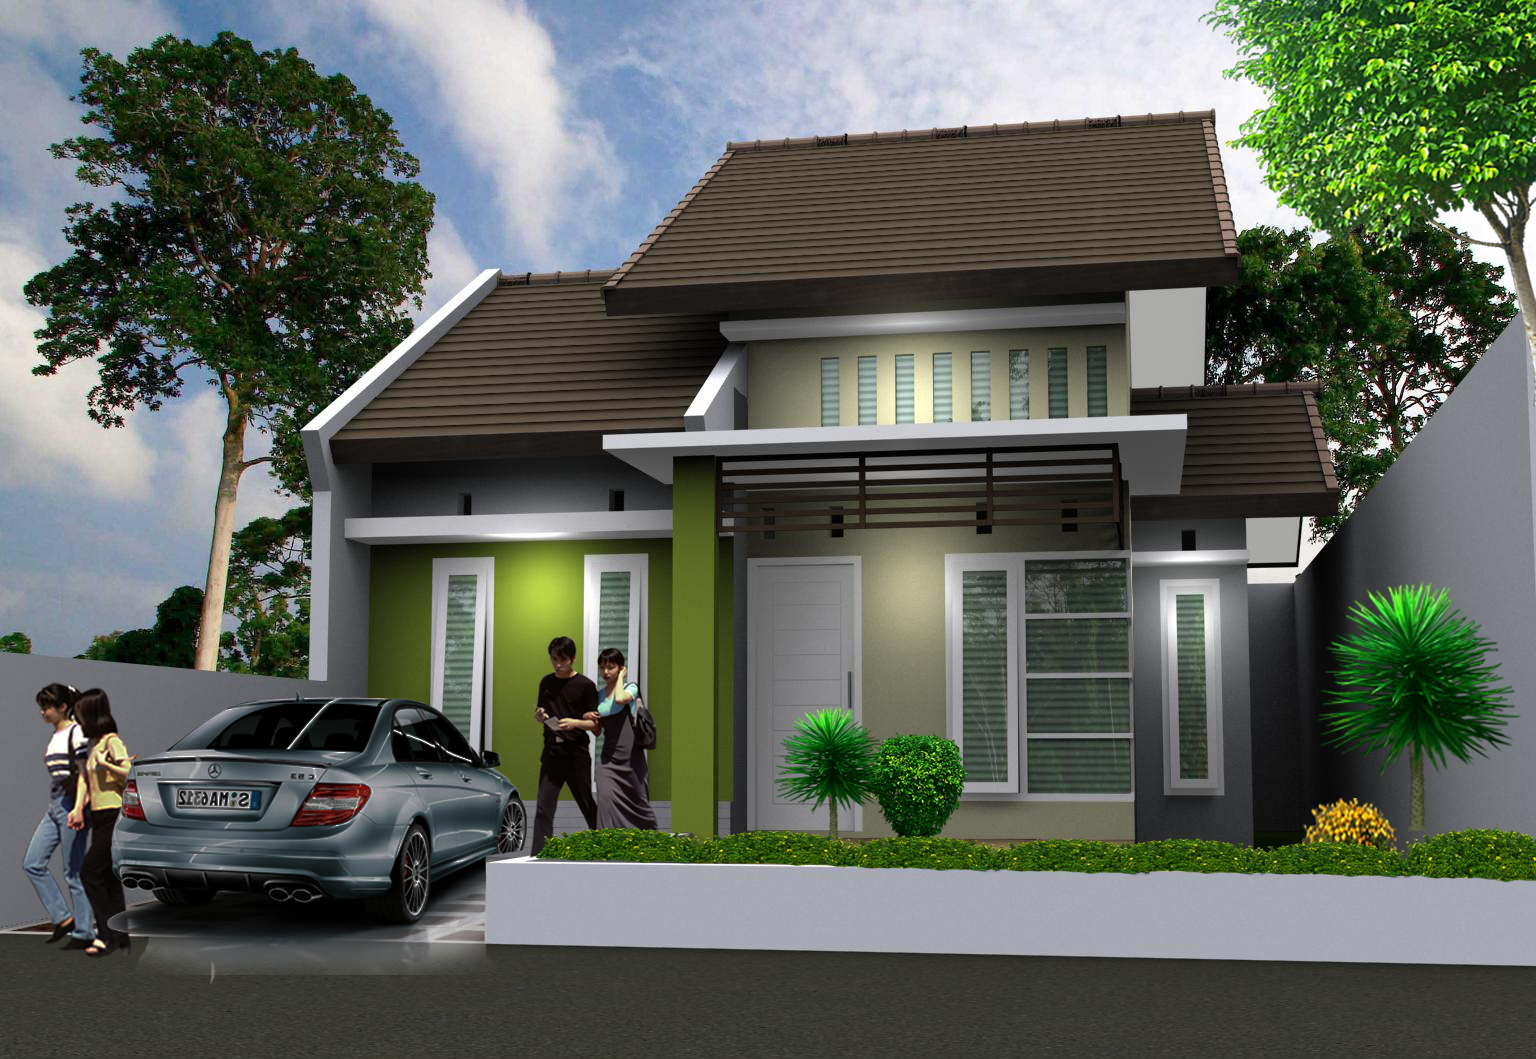 21 Model Rumah Sederhana Tapi Kelihatan Mewah Terbaru 2018 | Dekor ...